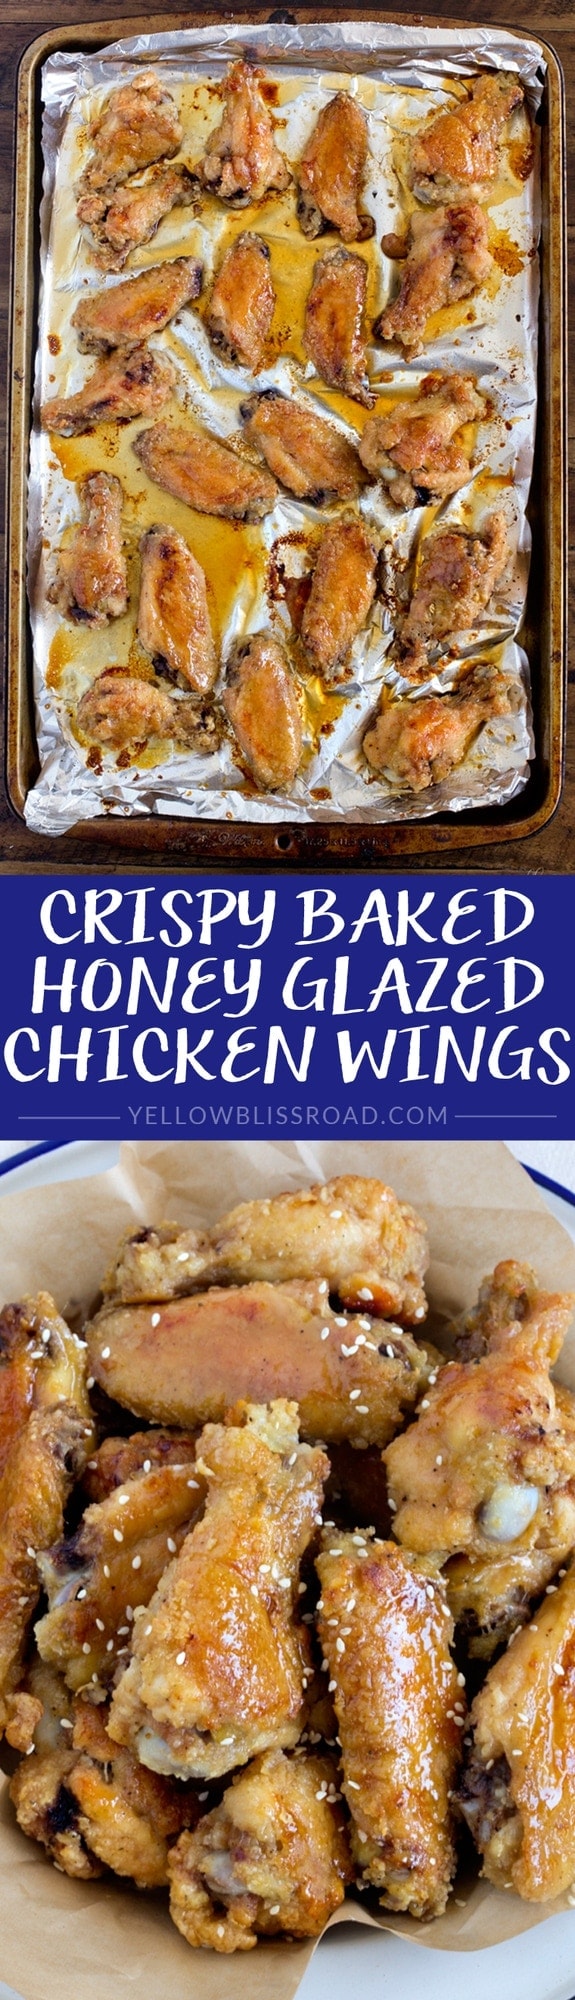 Crispy Baked Honey Glazed Chicken Wings